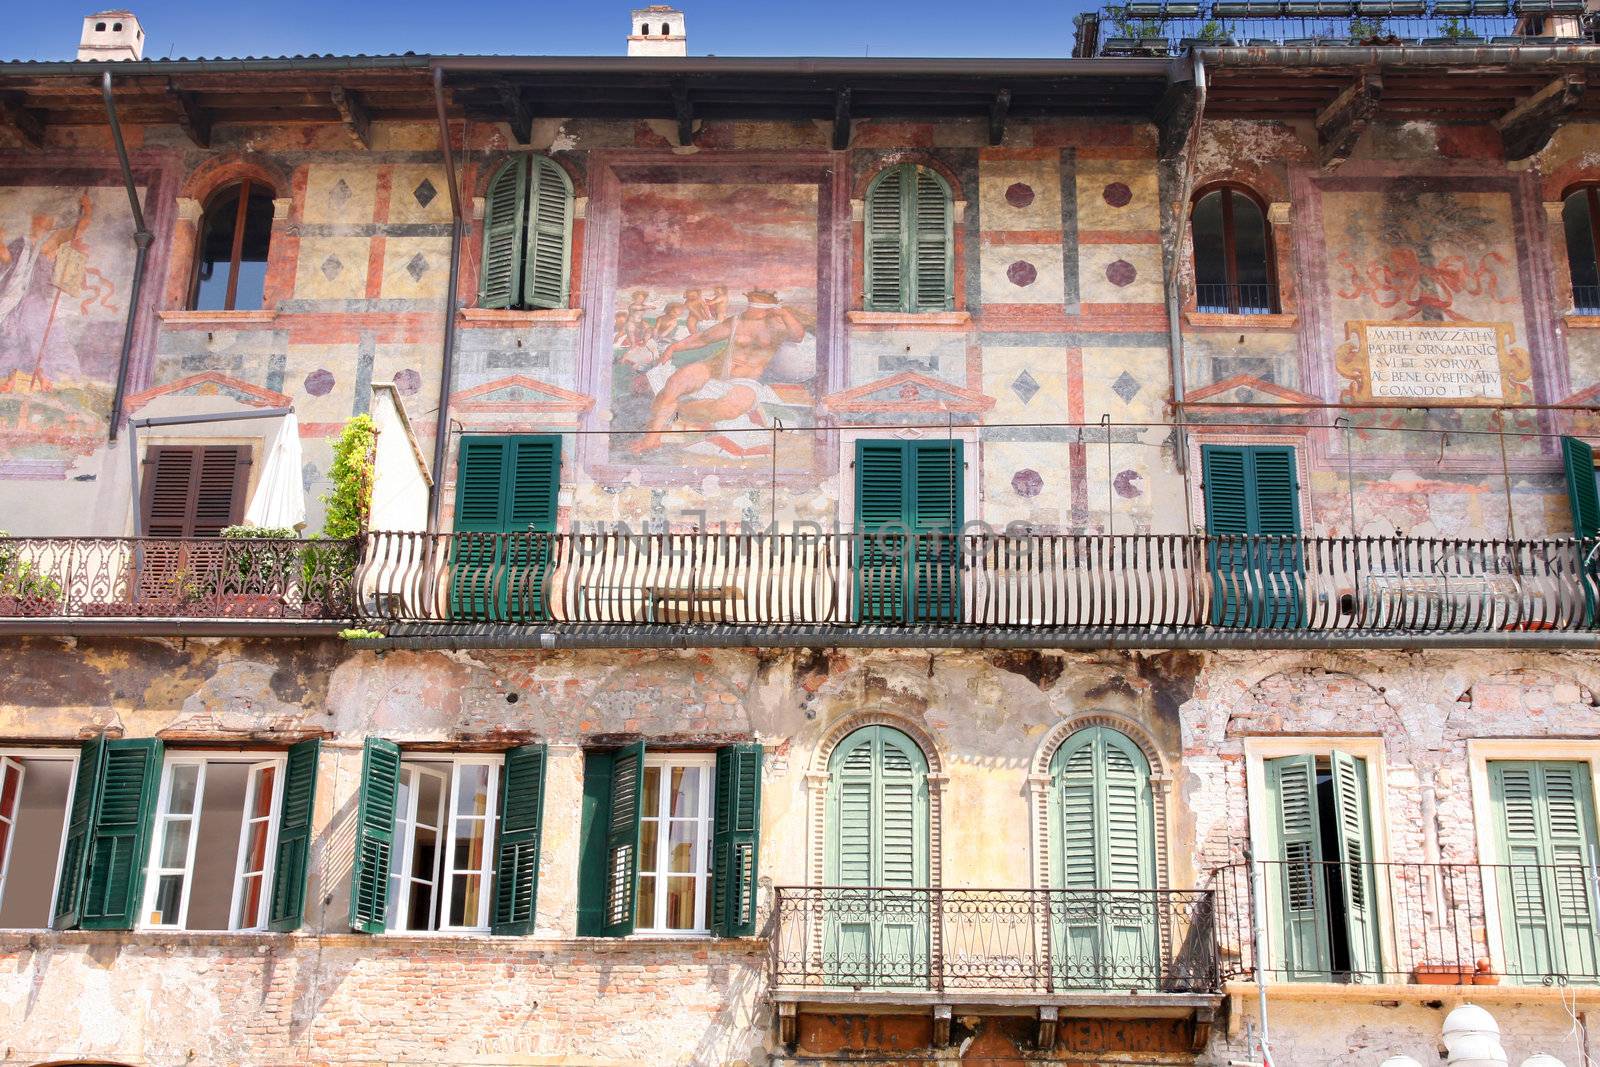 Mazzanti house in Piazza delle Erbe in Verona, Italy